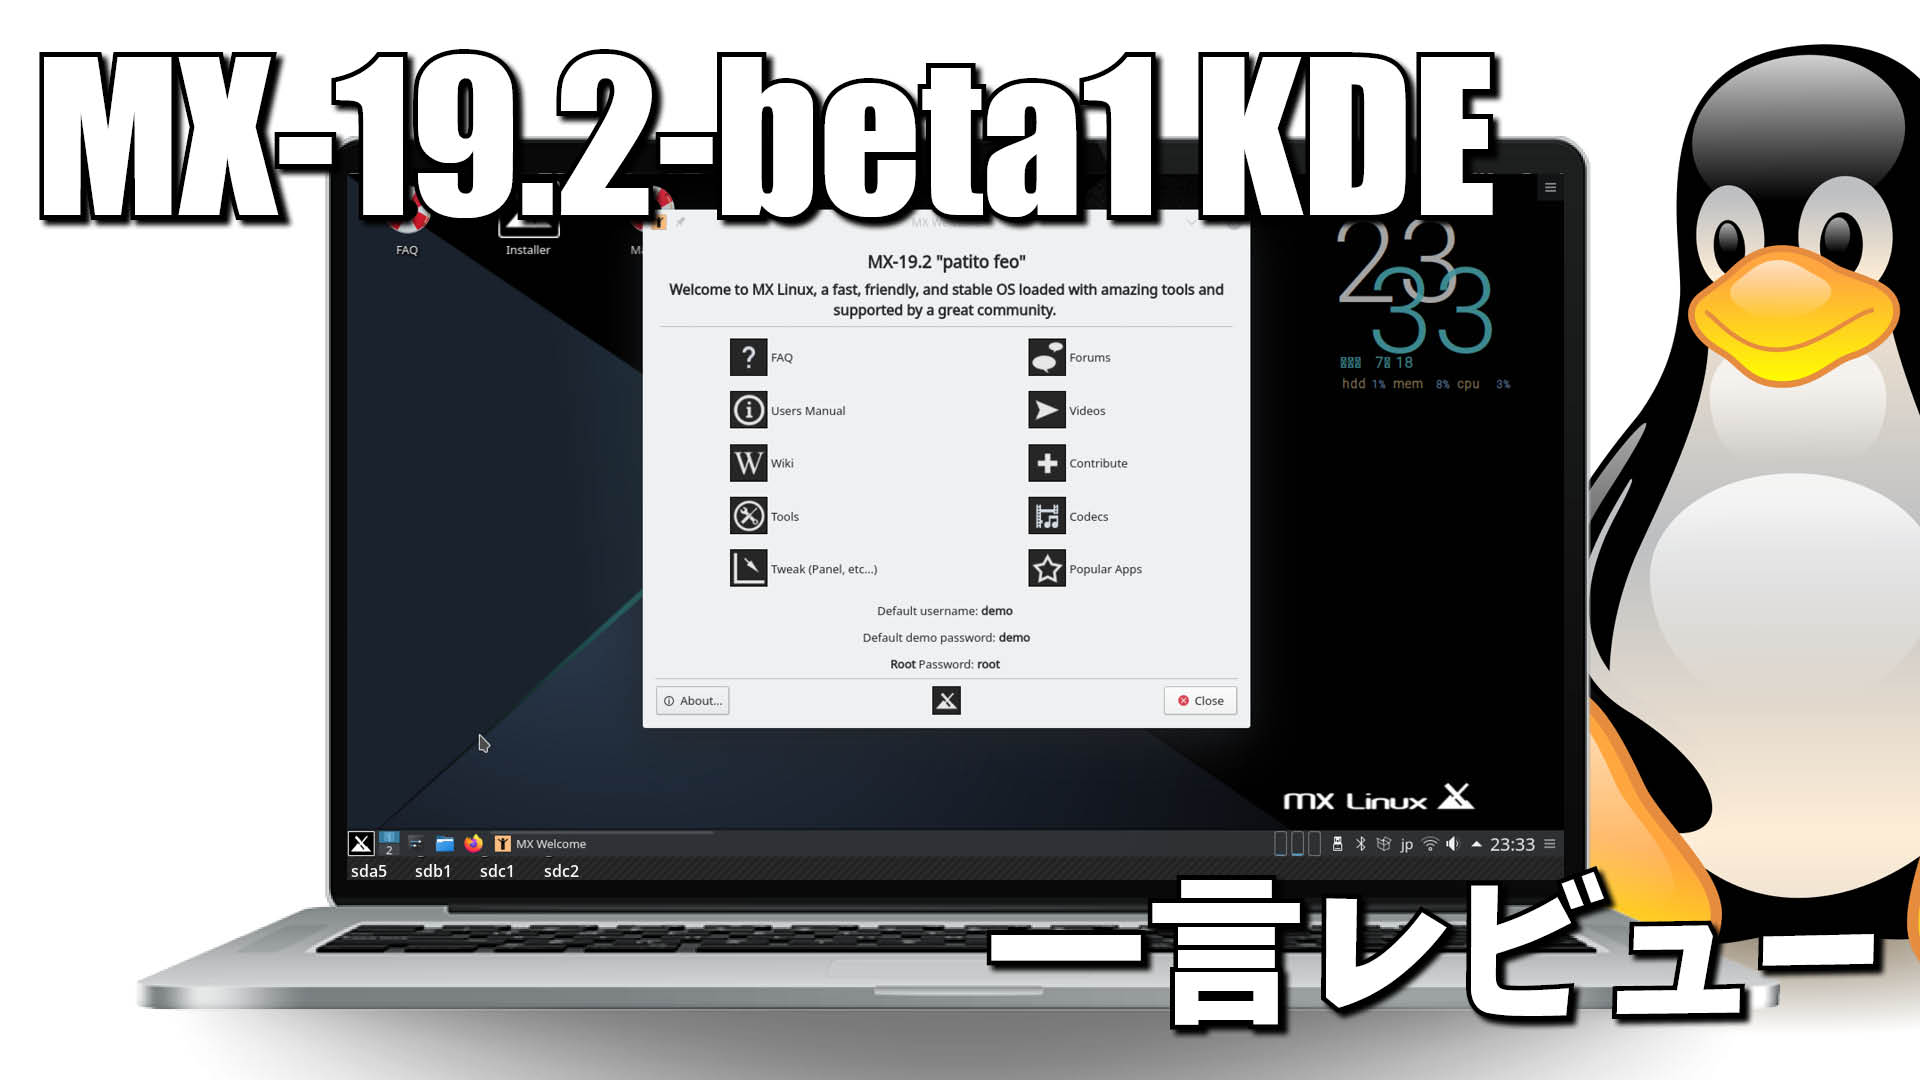 一言レビュー: MX-19.2-beta1 KDE